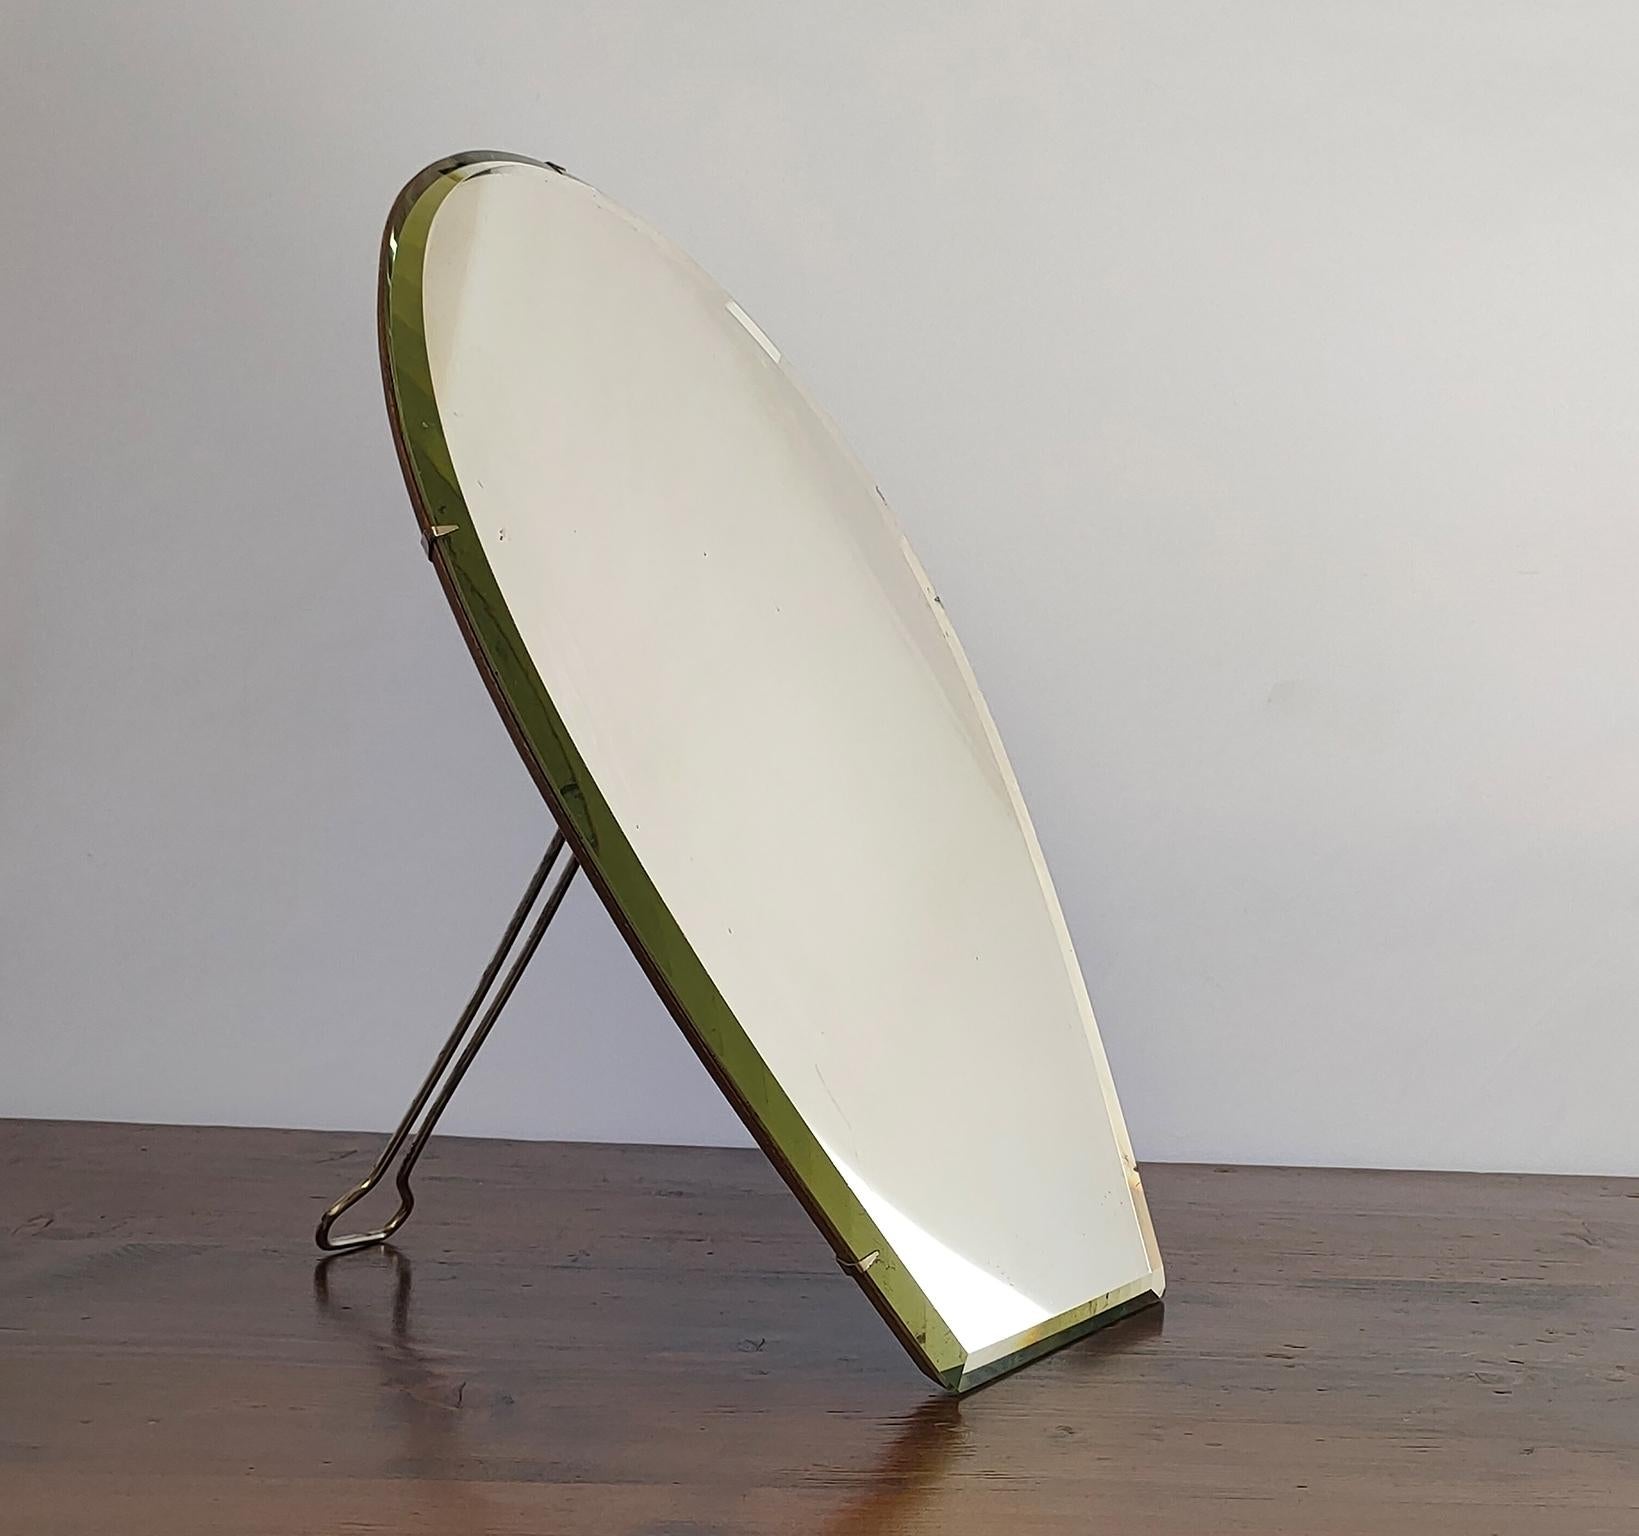 Ein schöner Frisier- oder Tischspiegel aus dem frühen 20. Jahrhundert, entworfen und hergestellt von der Glasmanufaktur fonuded im Jahr 1881 in Mailand von Carlo Tenca. 
Der Spiegel trägt auf der Rückseite die Herstellermarke ''TENCA & C.